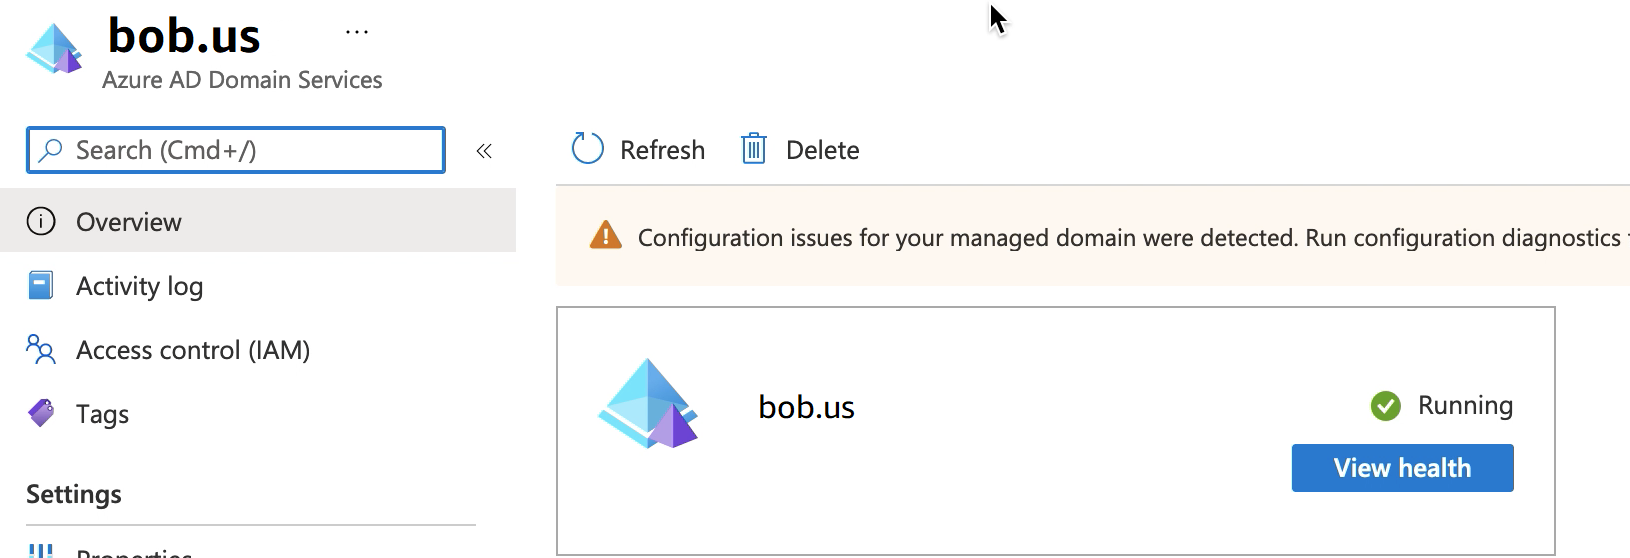 Layar layanan domain Azure AD yang menampilkan bob.us grup sumber daya yang berjalan.